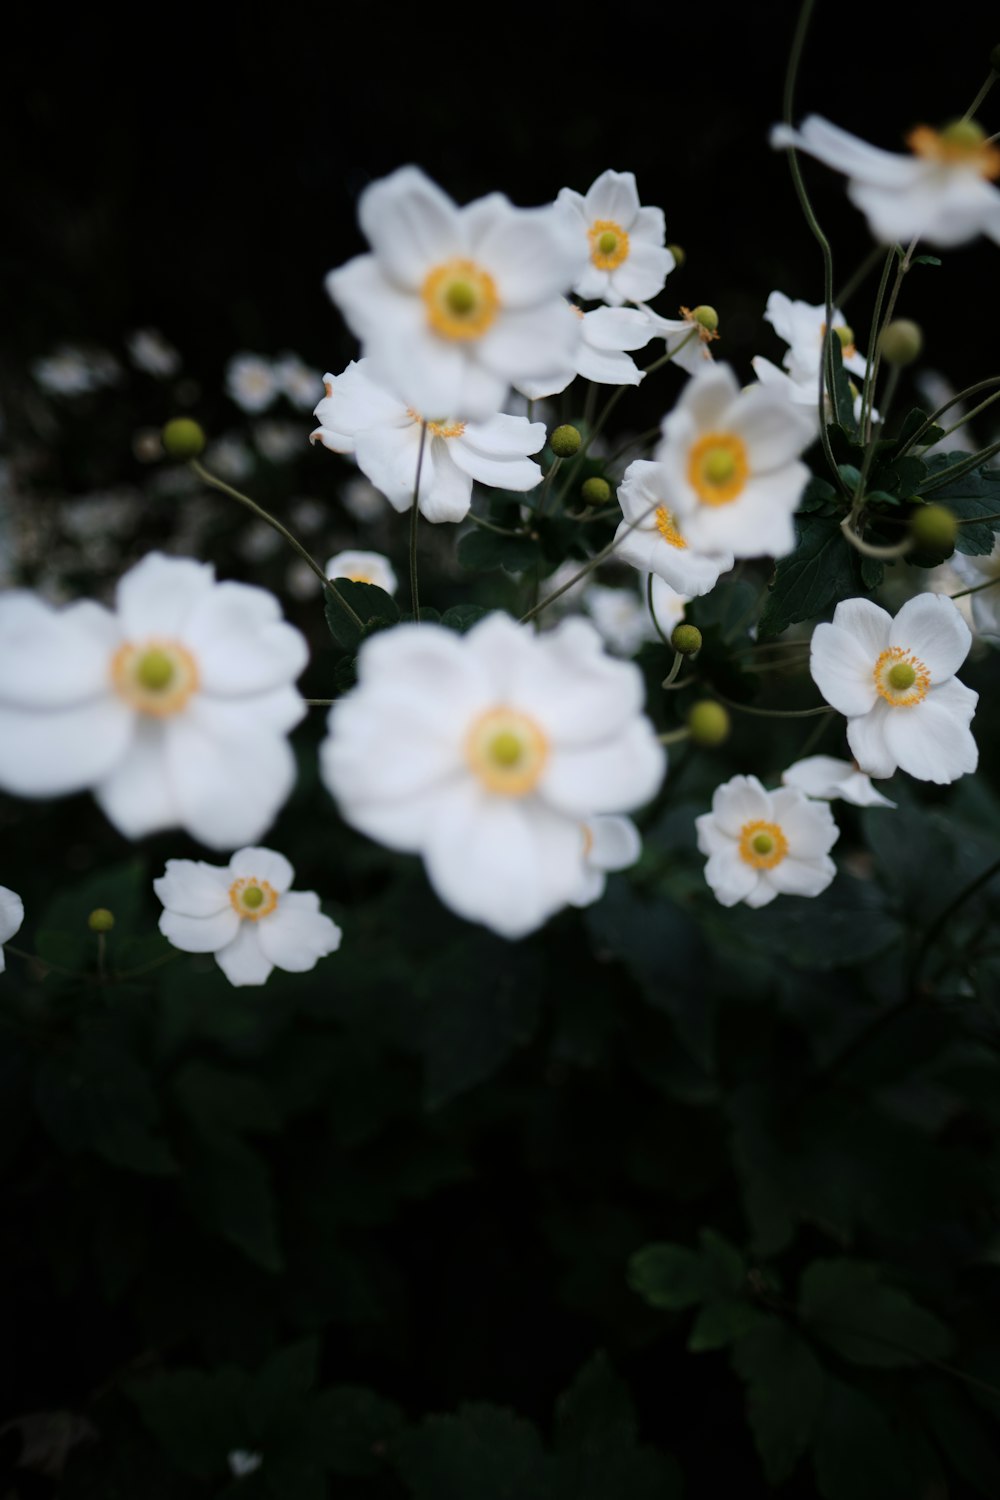 un bouquet de fleurs blanches avec des centres jaunes